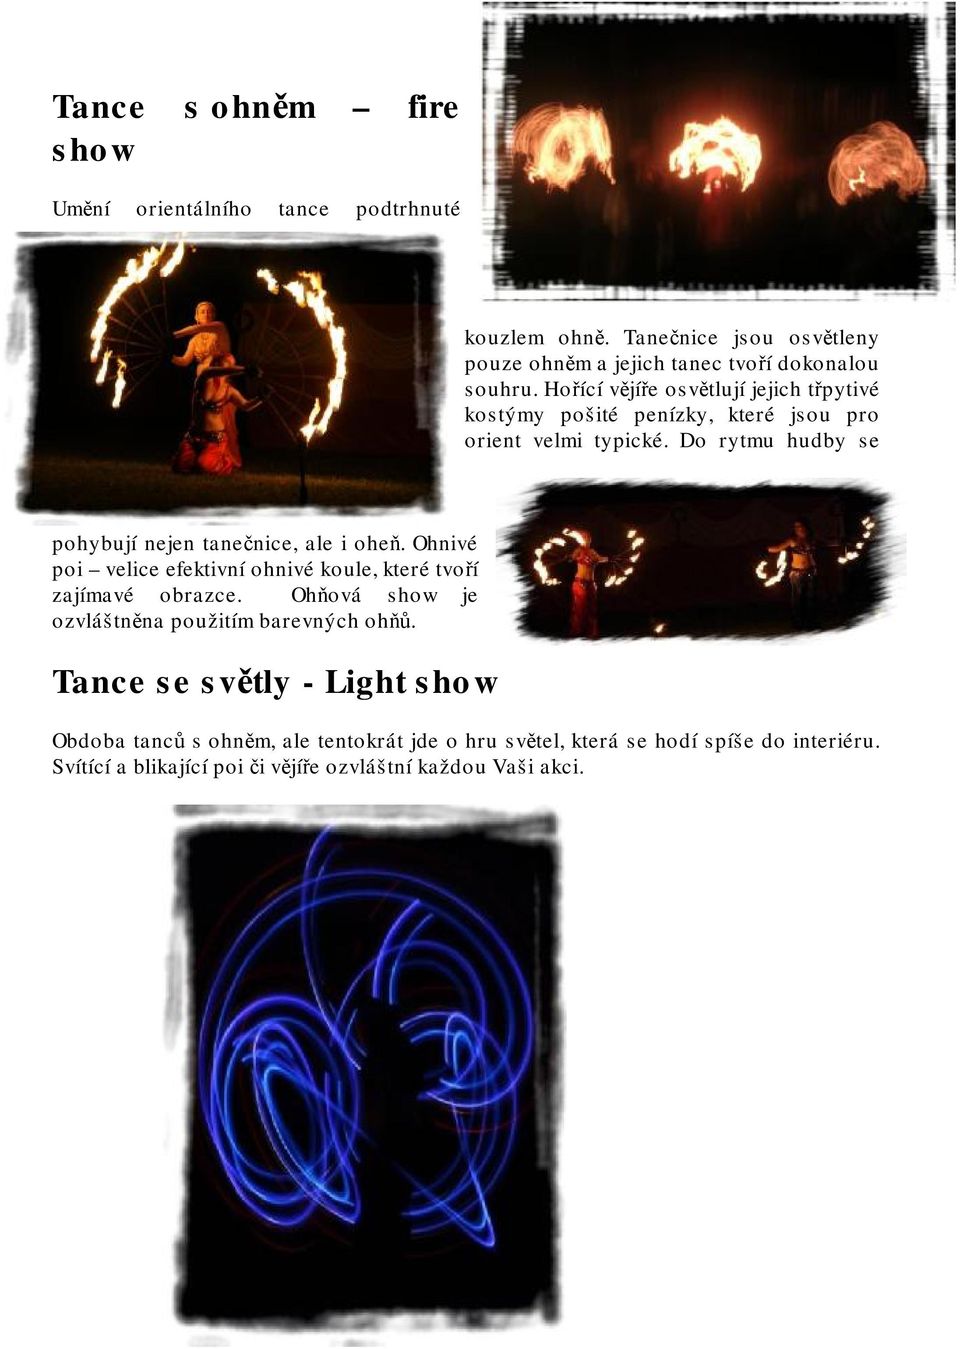 Do rytmu hudby se pohybují nejen tanečnice, ale i oheň. Ohnivé poi velice efektivní ohnivé koule, které tvoří zajímavé obrazce.